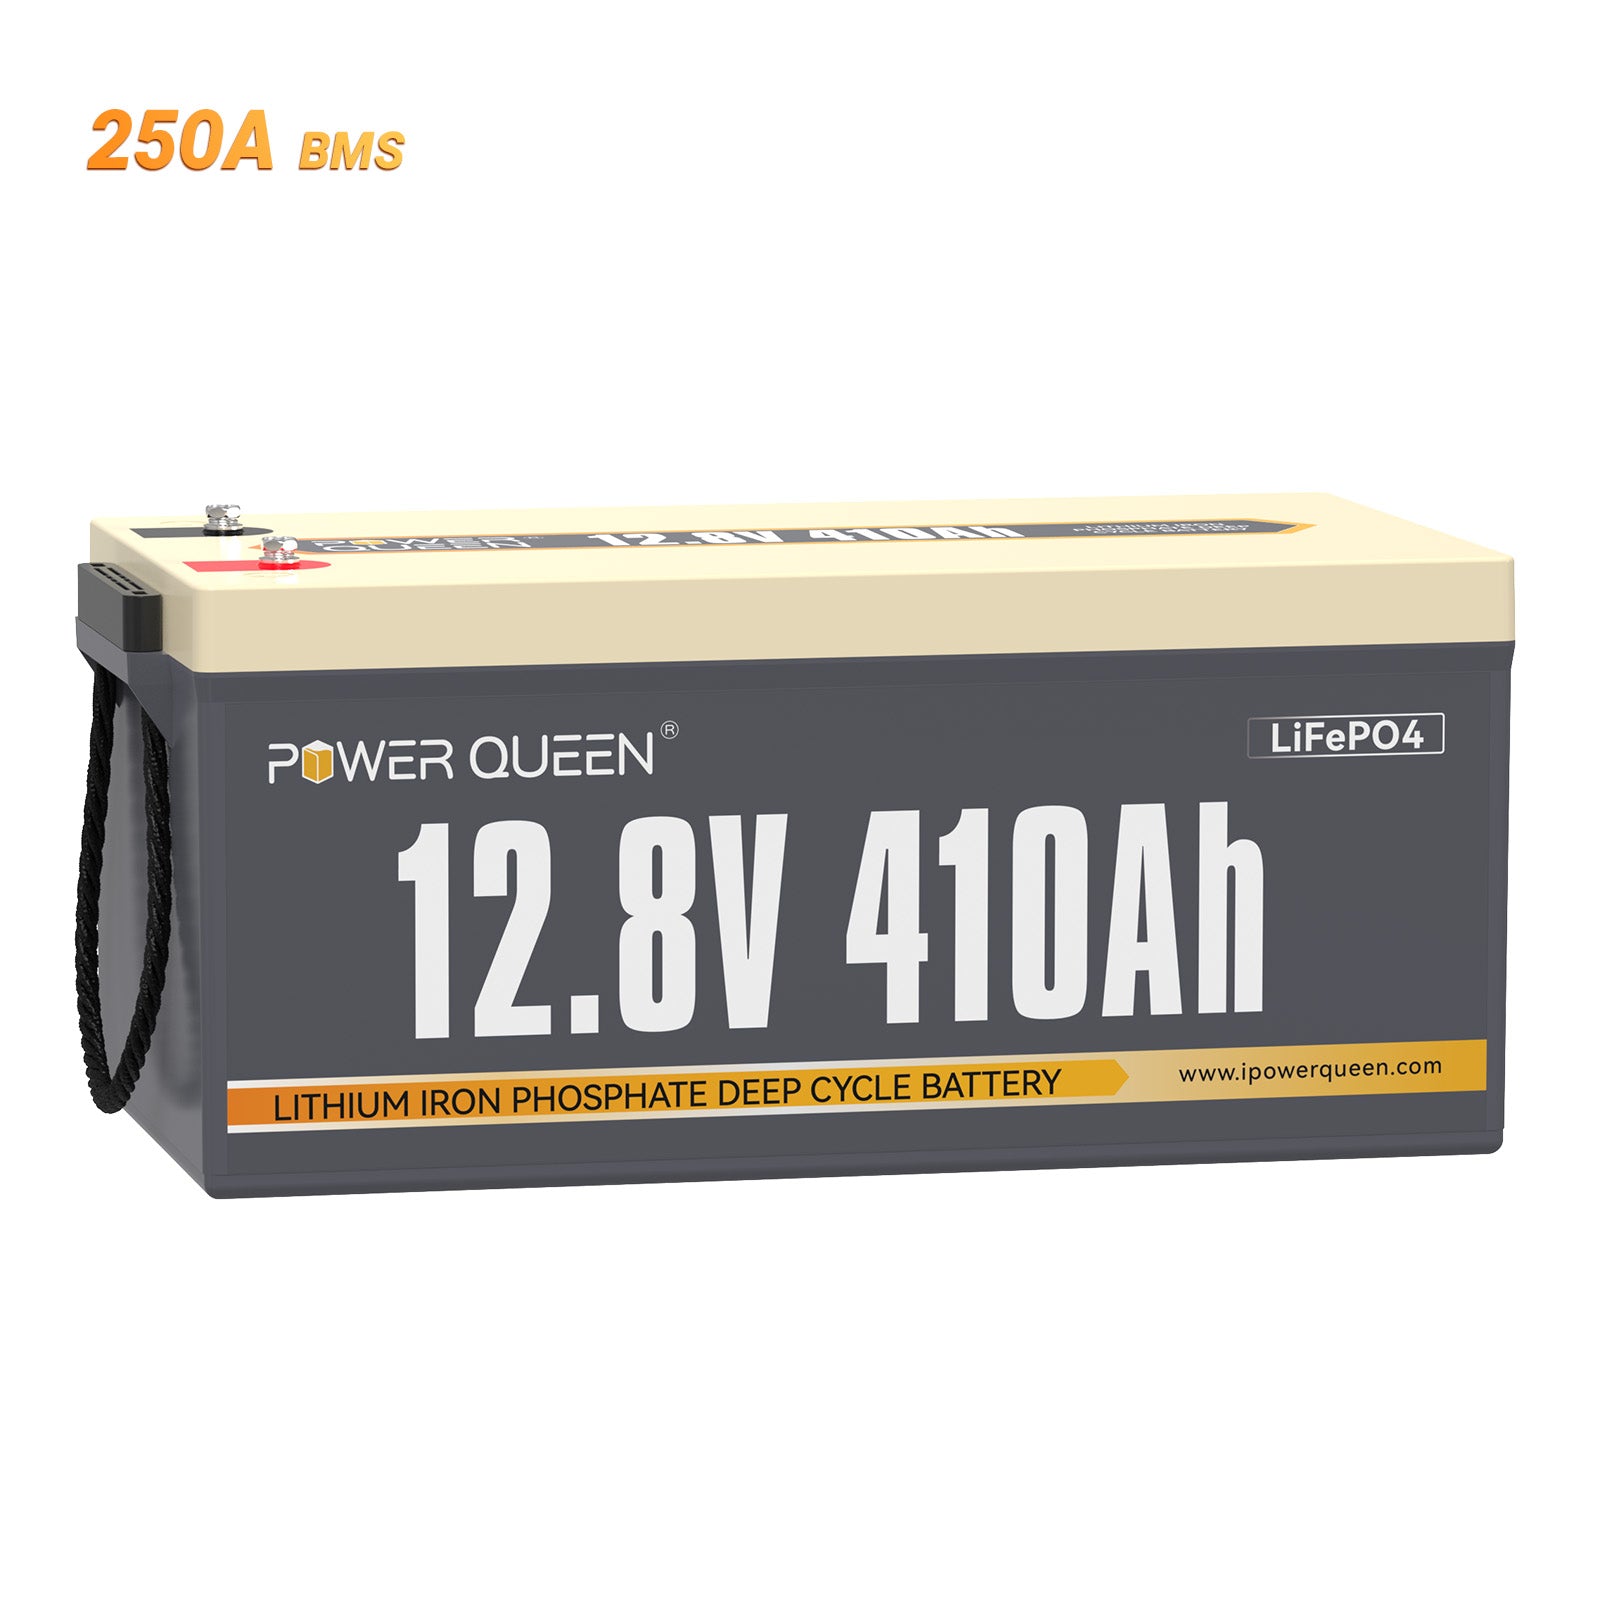 Batería Power Queen LiFePO4 de 12V 410Ah, BMS de 250A incorporado